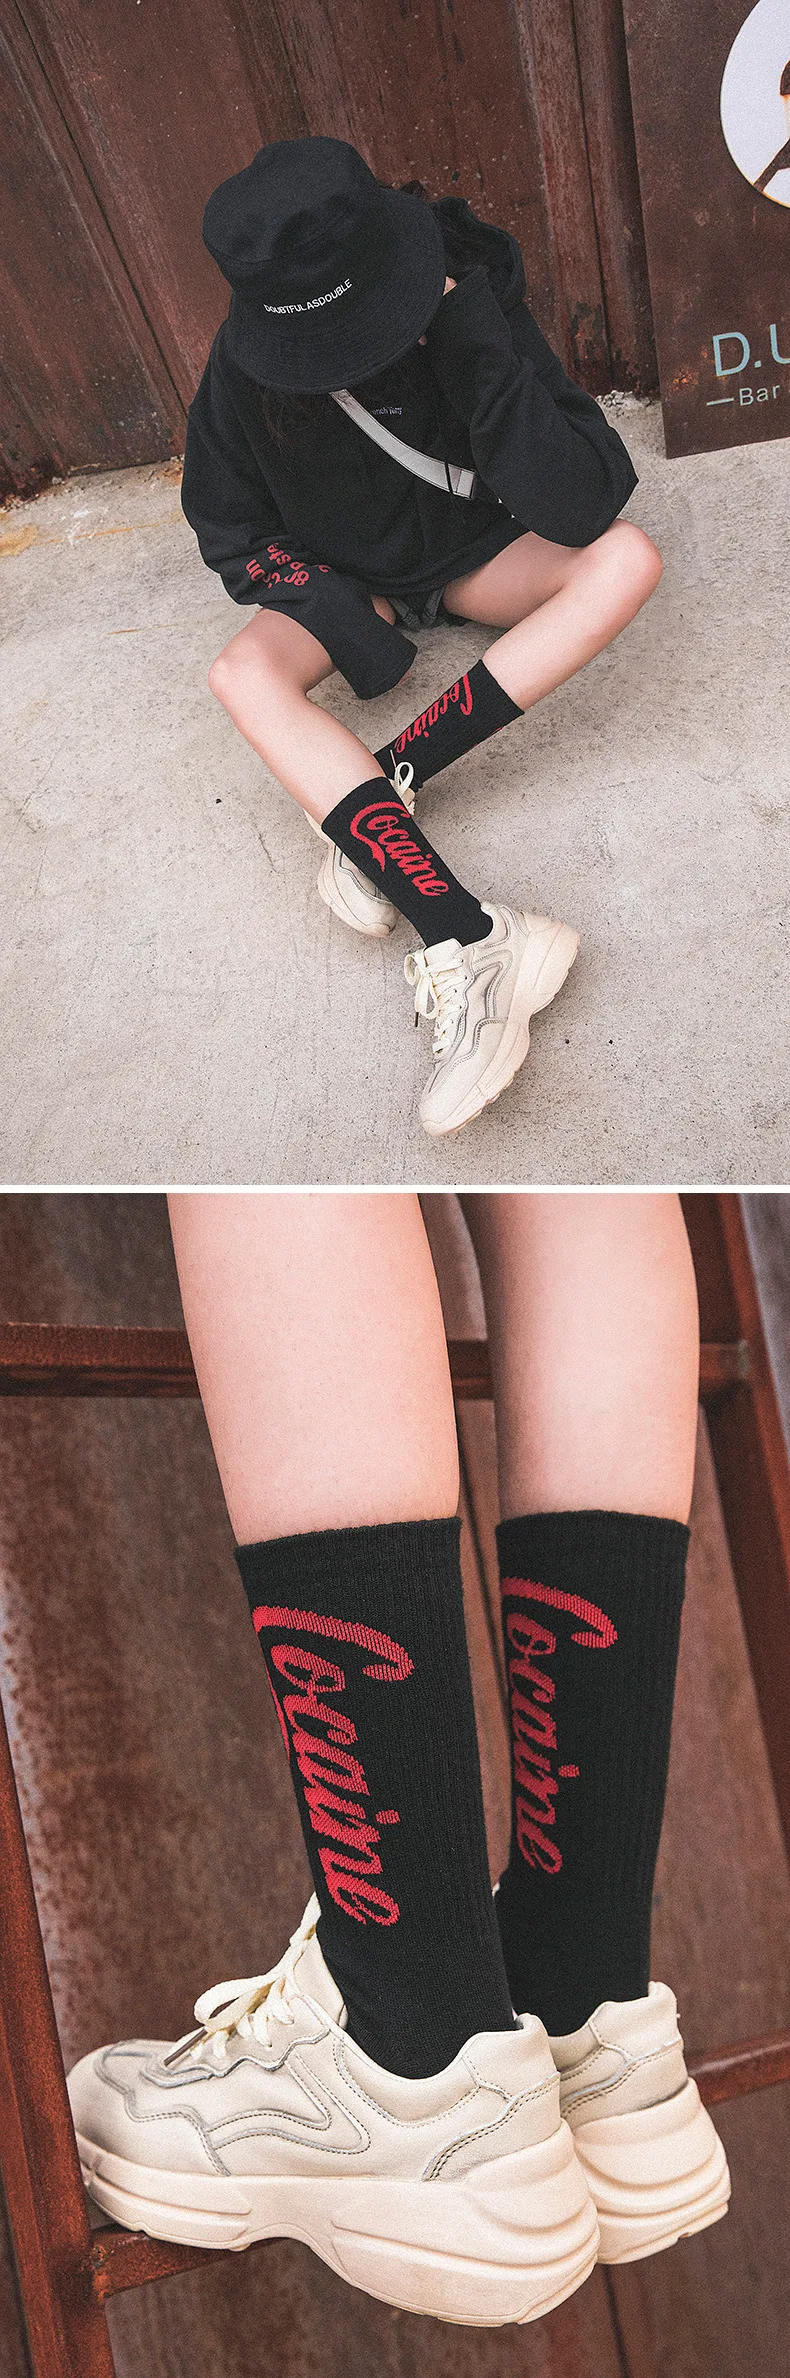 Мужские персональные парные длинные носки женские Харадзюку хип-хоп английские буквы китайские арабские черные Популярные красные носки модная уличная одежда